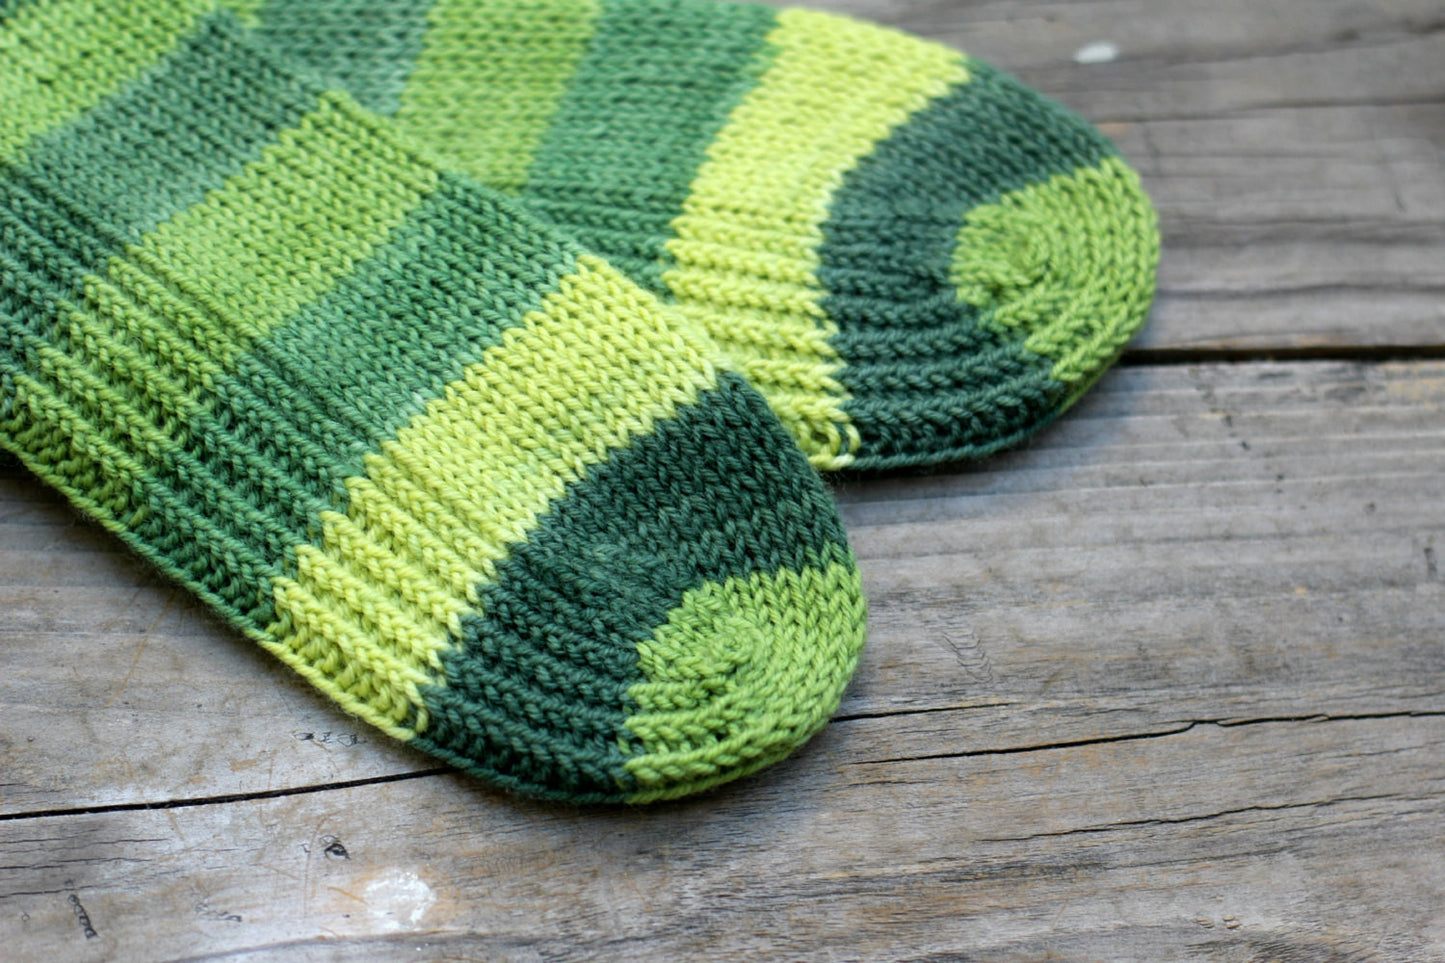 Knit green ankle socks in green striped wool for women